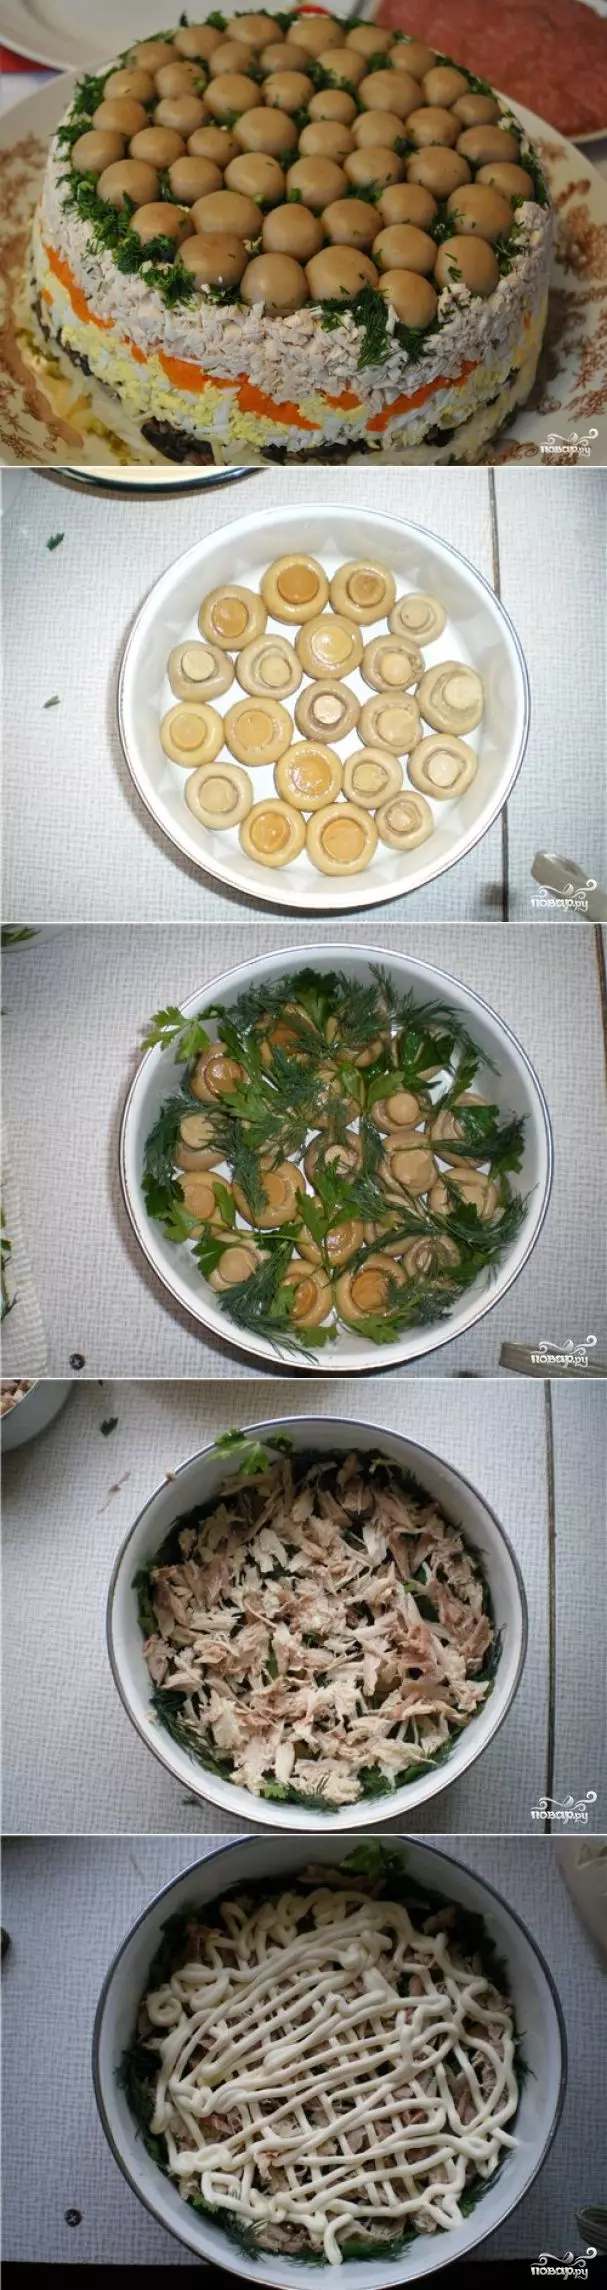 классический рецепт с фото: салат грибное лукошко с шампиньонами фото 1